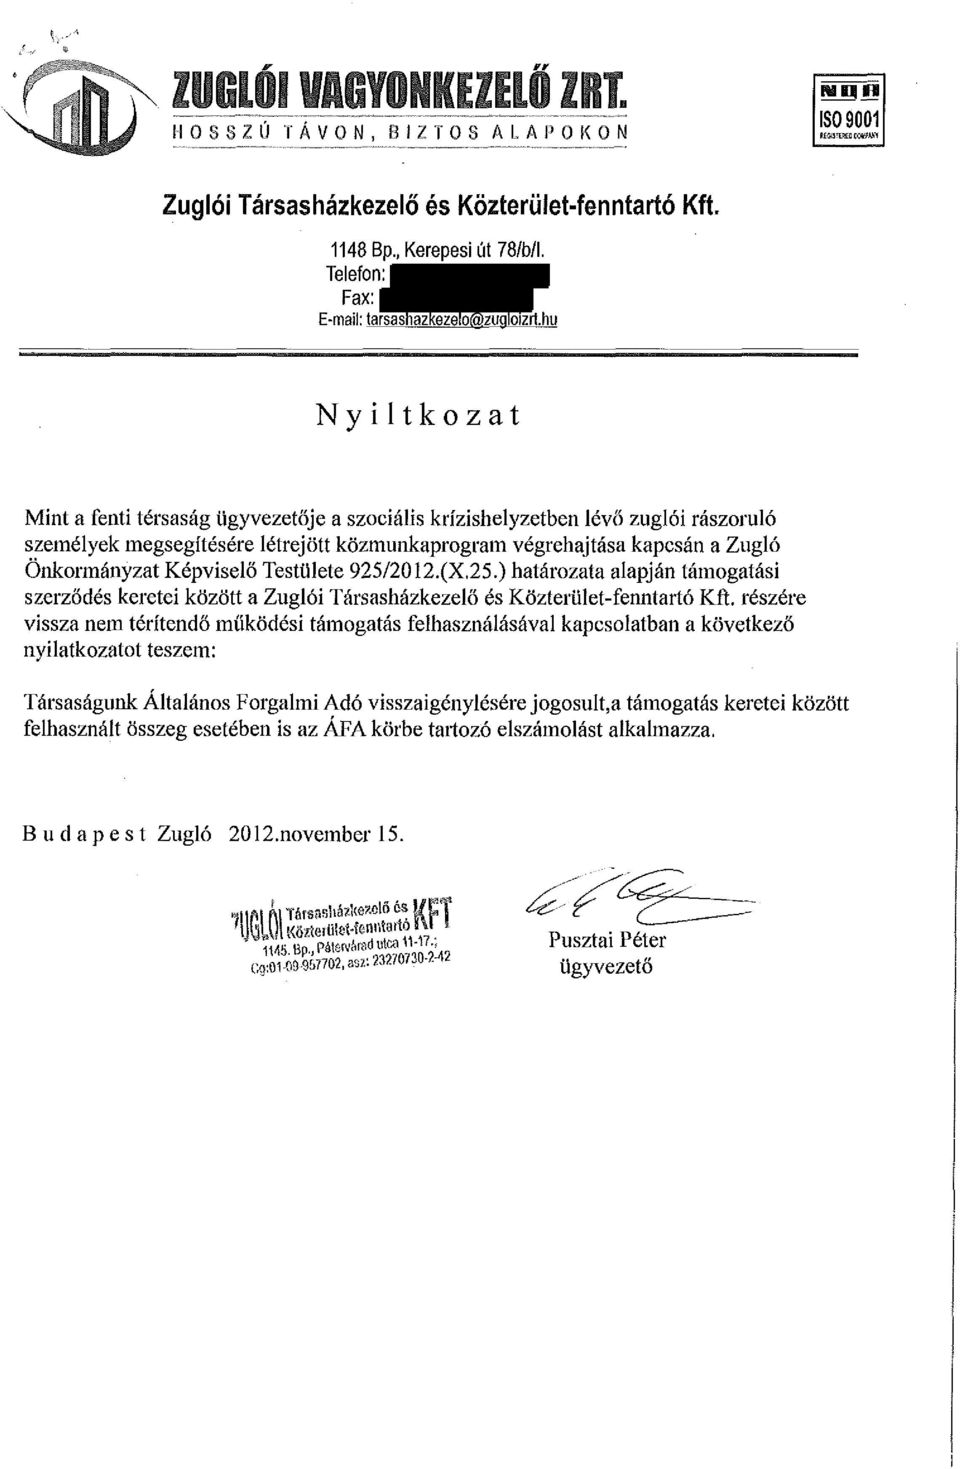 Képviselő Testülete 925/2012.(X.25.) határozata alapján támogatási szerződés keretei között a Zuglói Társasházkezelő és Közterület-fenntartó Kft.